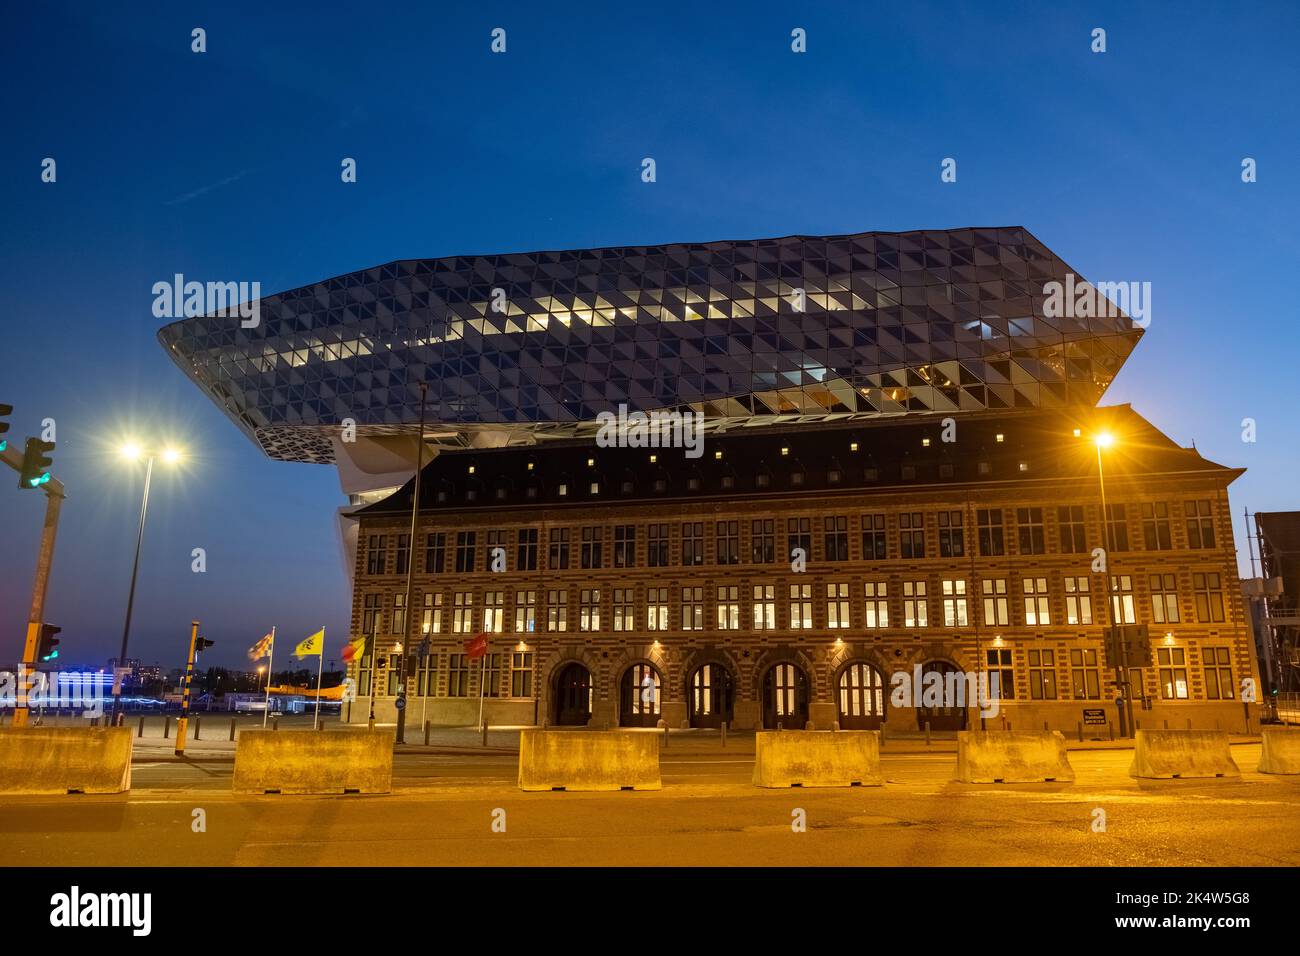 ANTWERPEN, BELGIEN, 04 20 2022, das moderne architektonische Wahrzeichen als Hafenhaus des Antwerp-Brügge Hafens im Stadtzentrum von Antwerpen, entworfen von der berühmten Architektin Zaha Hadid. Hochwertige Fotos Stockfoto